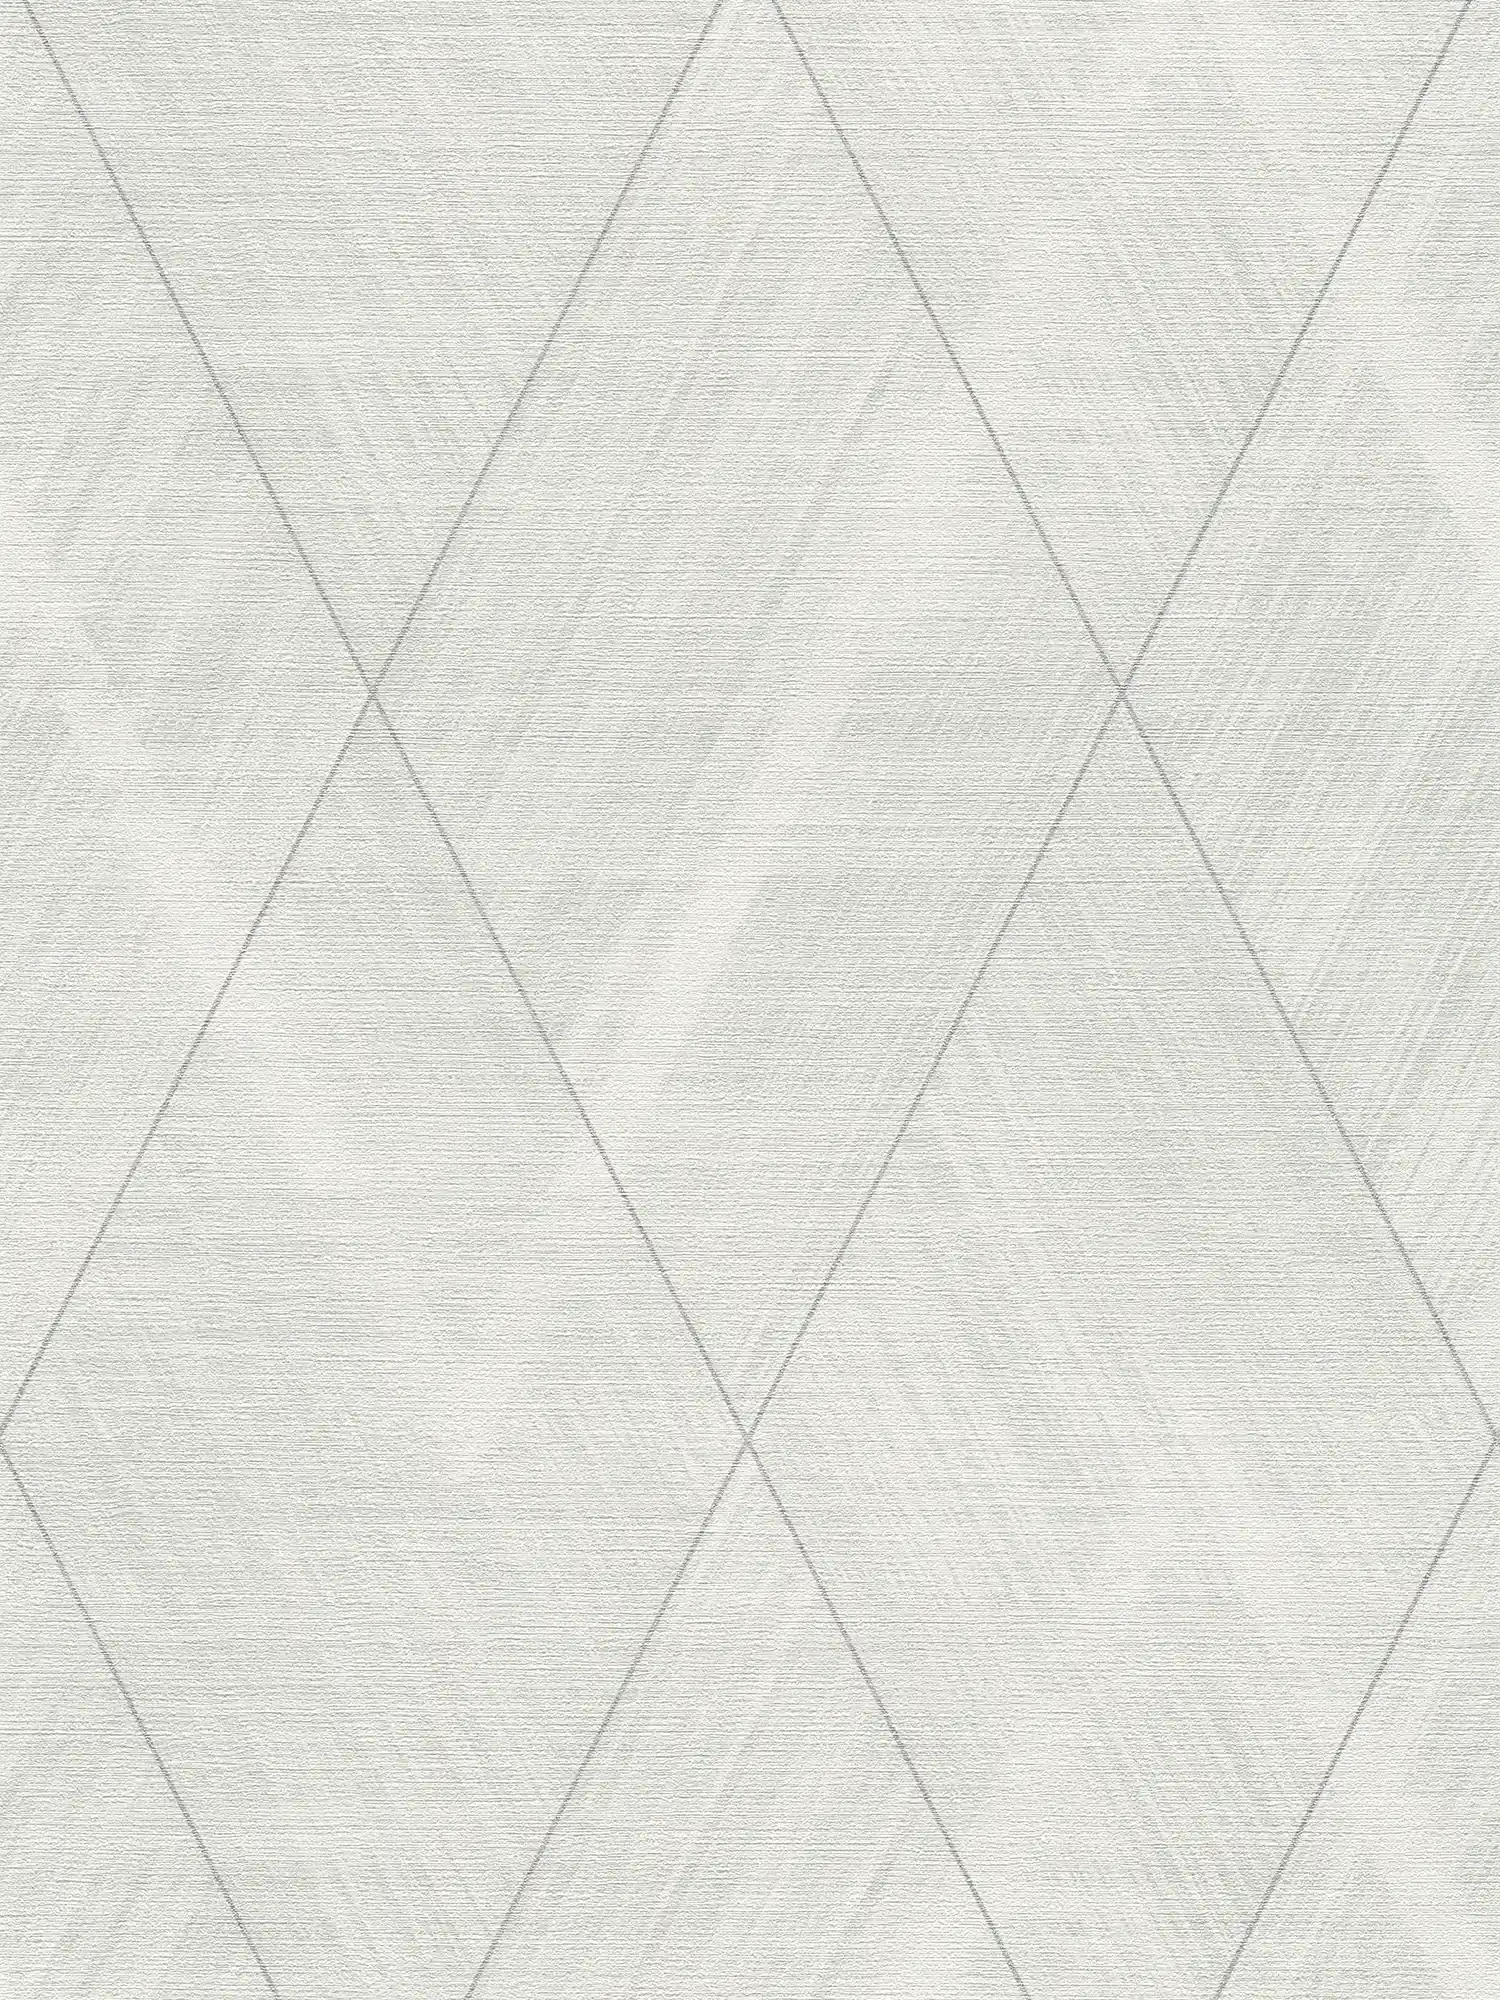         Papier peint aspect textile avec motif losange - métallique, blanc
    